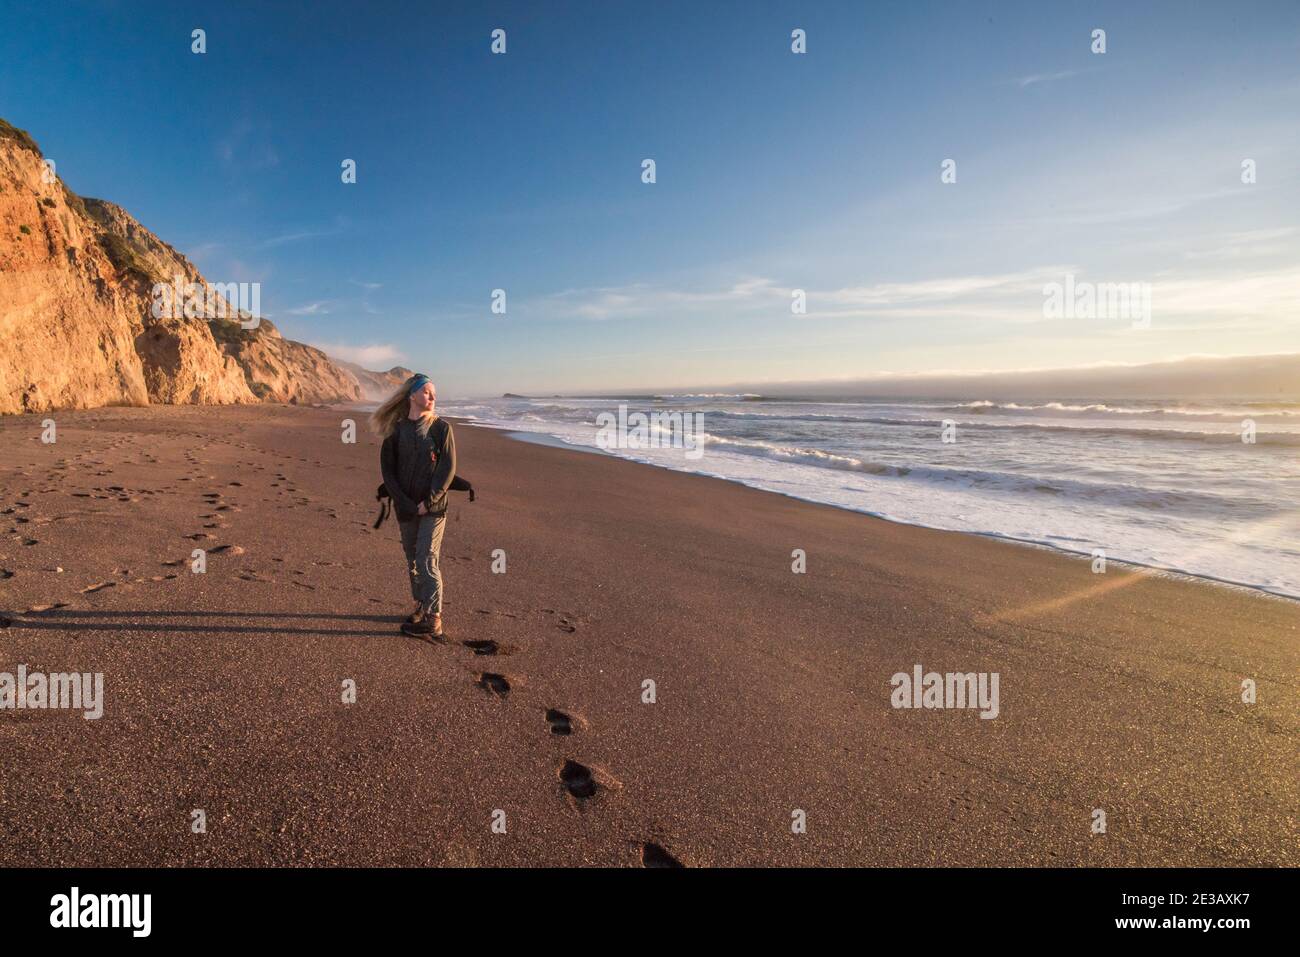 Une femme seule se tient sur une plage vide dans le littoral national de point Reyes, en Californie, en regardant l'océan Pacifique. Banque D'Images